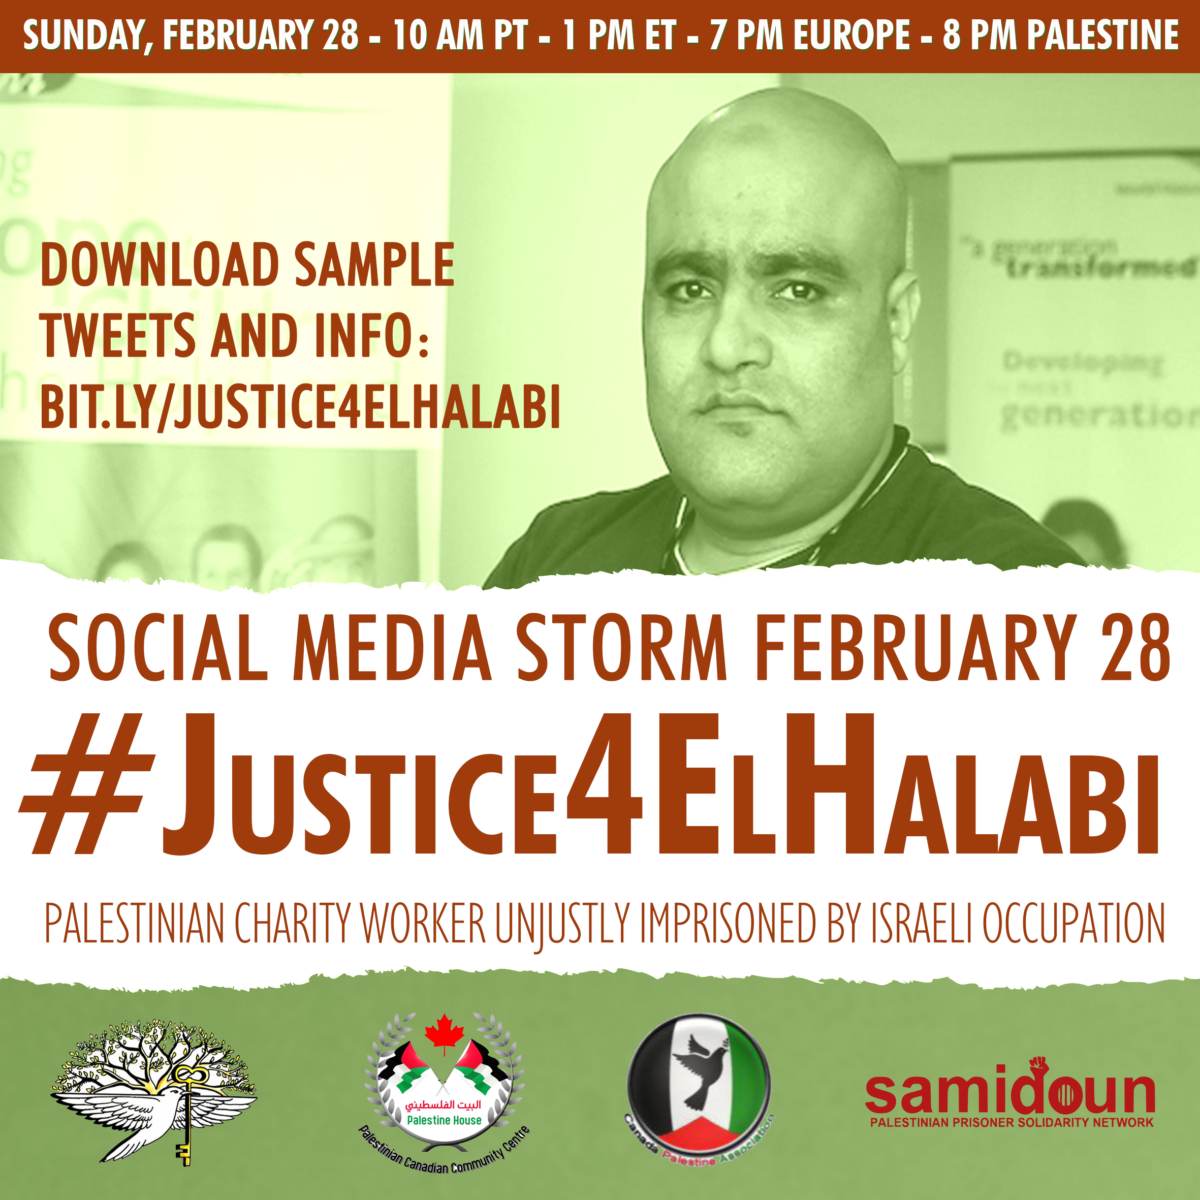 Free Mohammed El-Halabi!